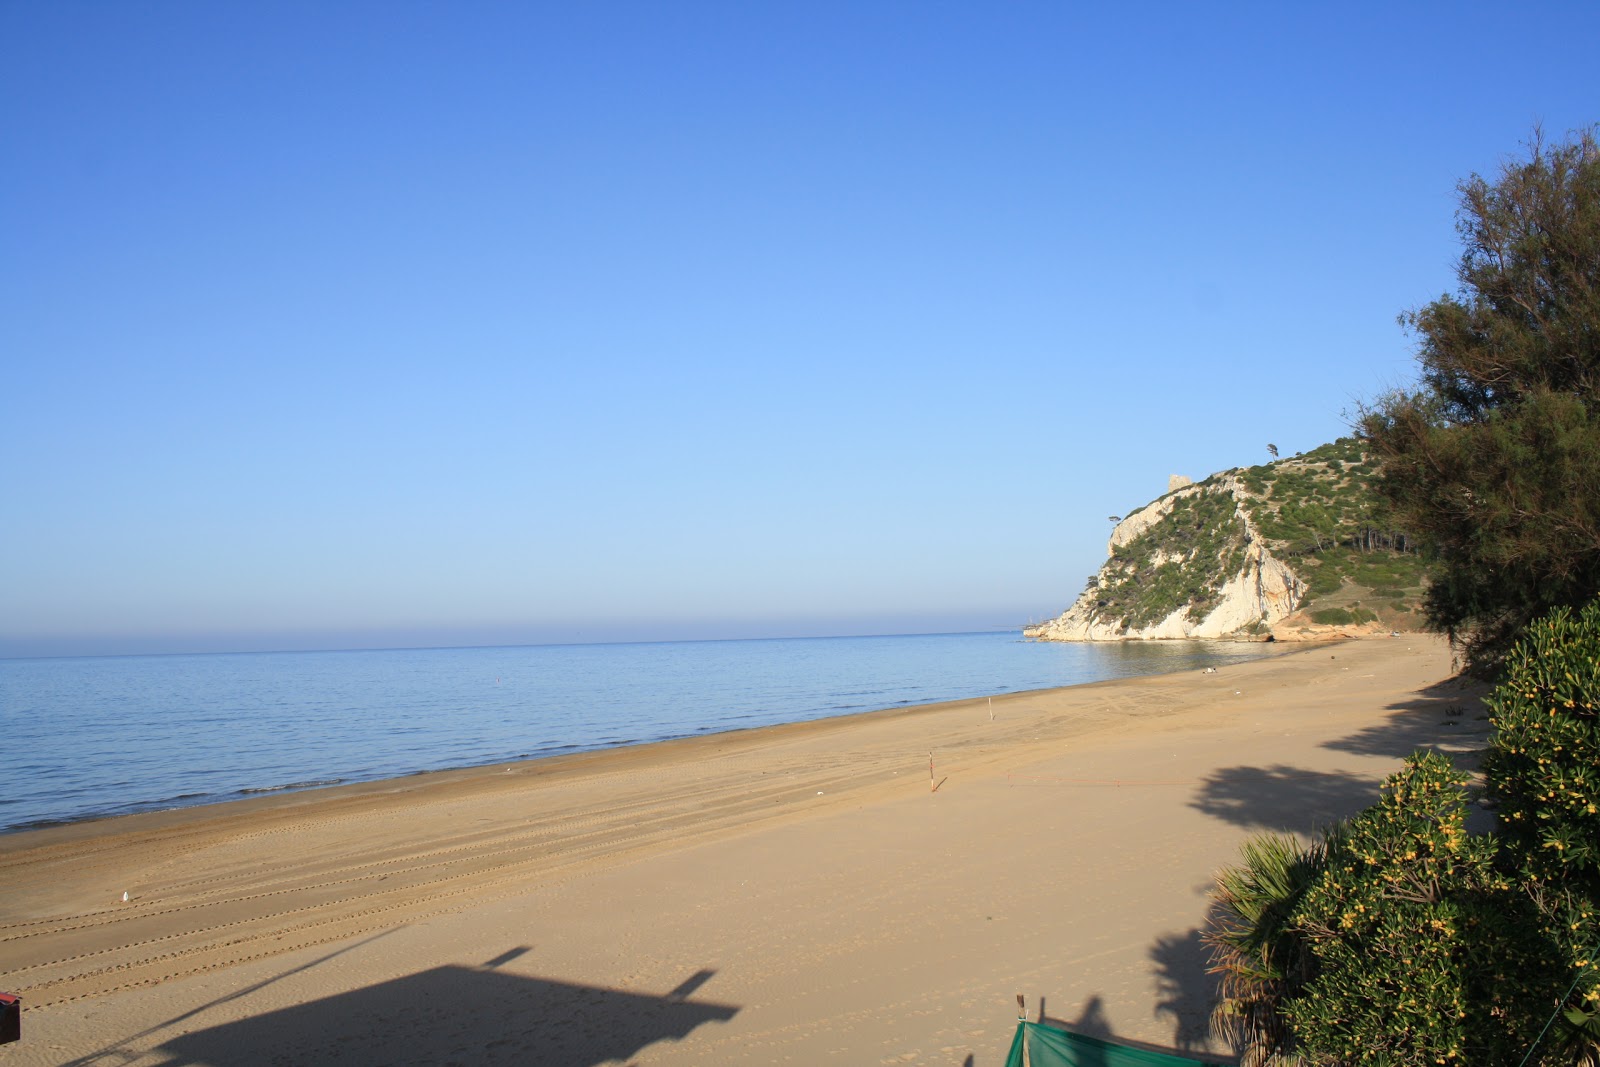 Baia Calenella'in fotoğrafı geniş plaj ile birlikte